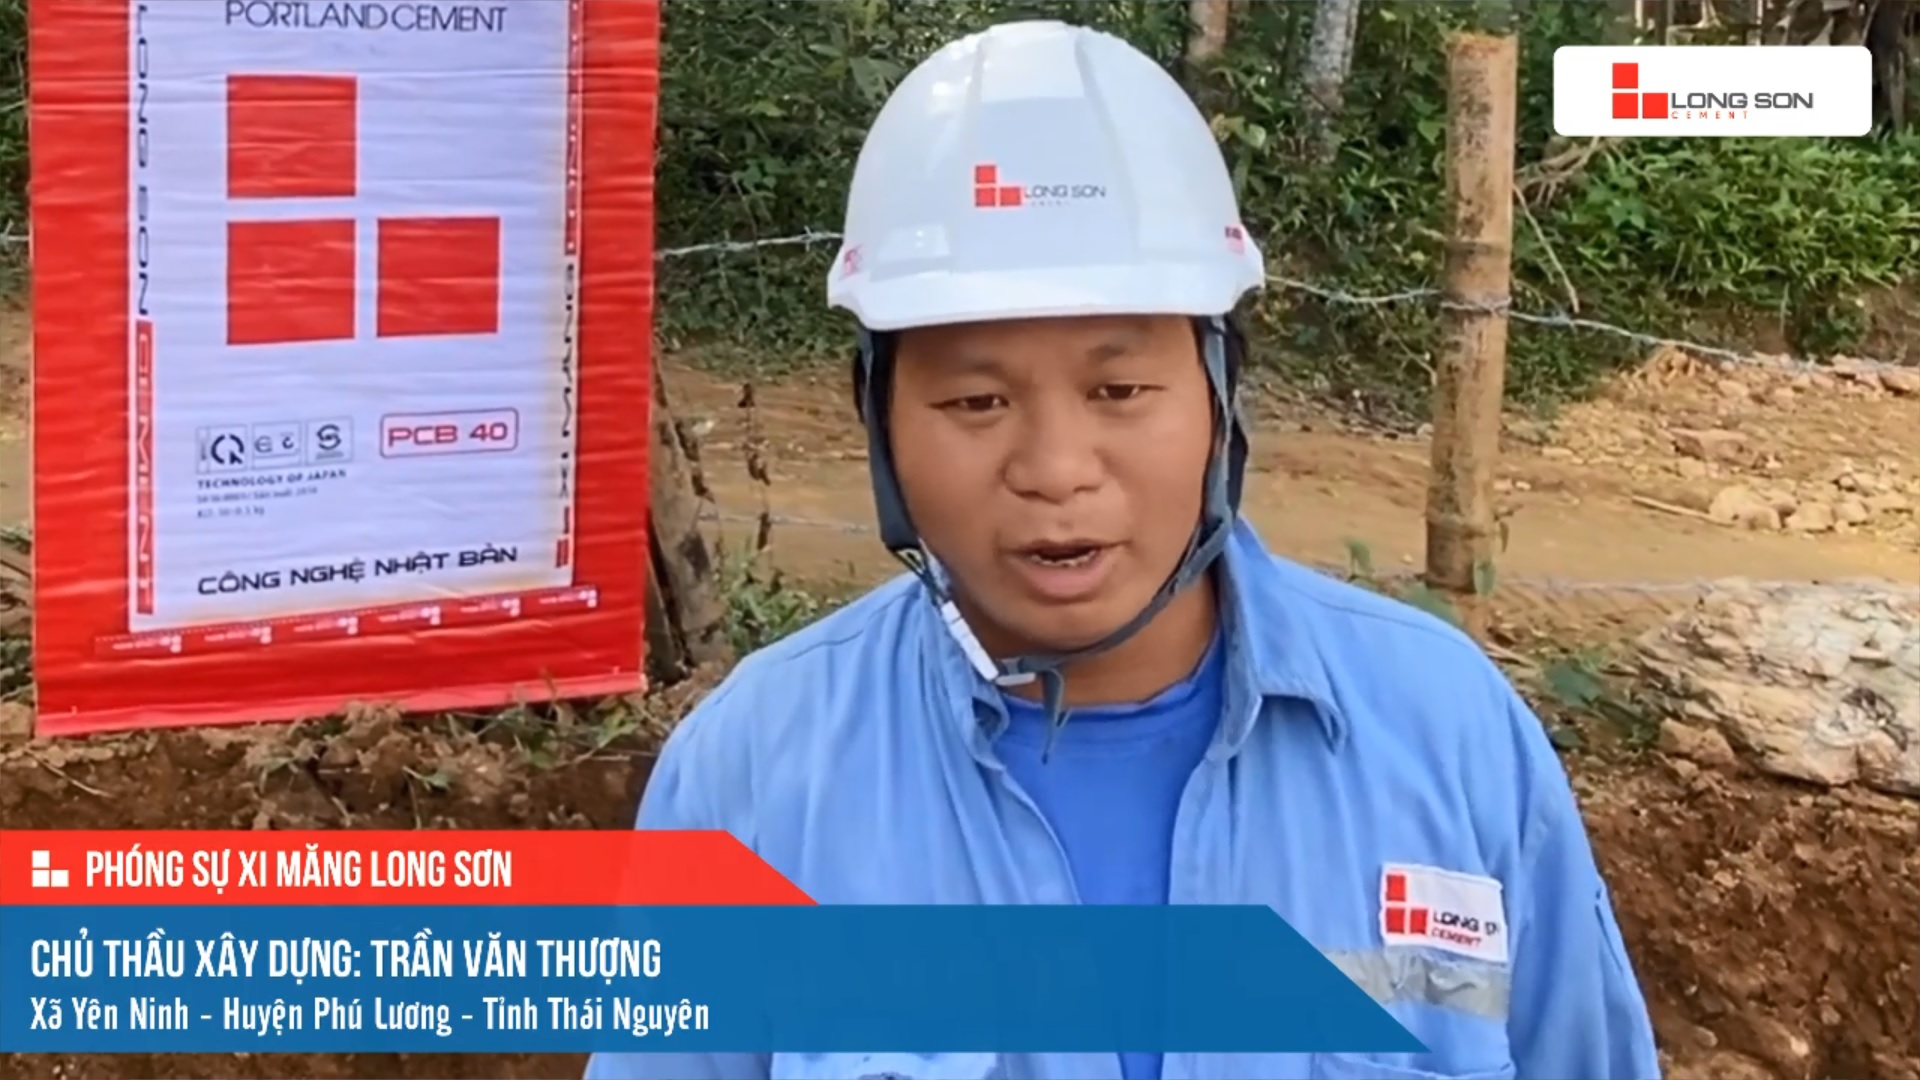 Phóng sự công trình sử dụng xi măng Long Sơn tại Thái Nguyên ngày 21/11/2021